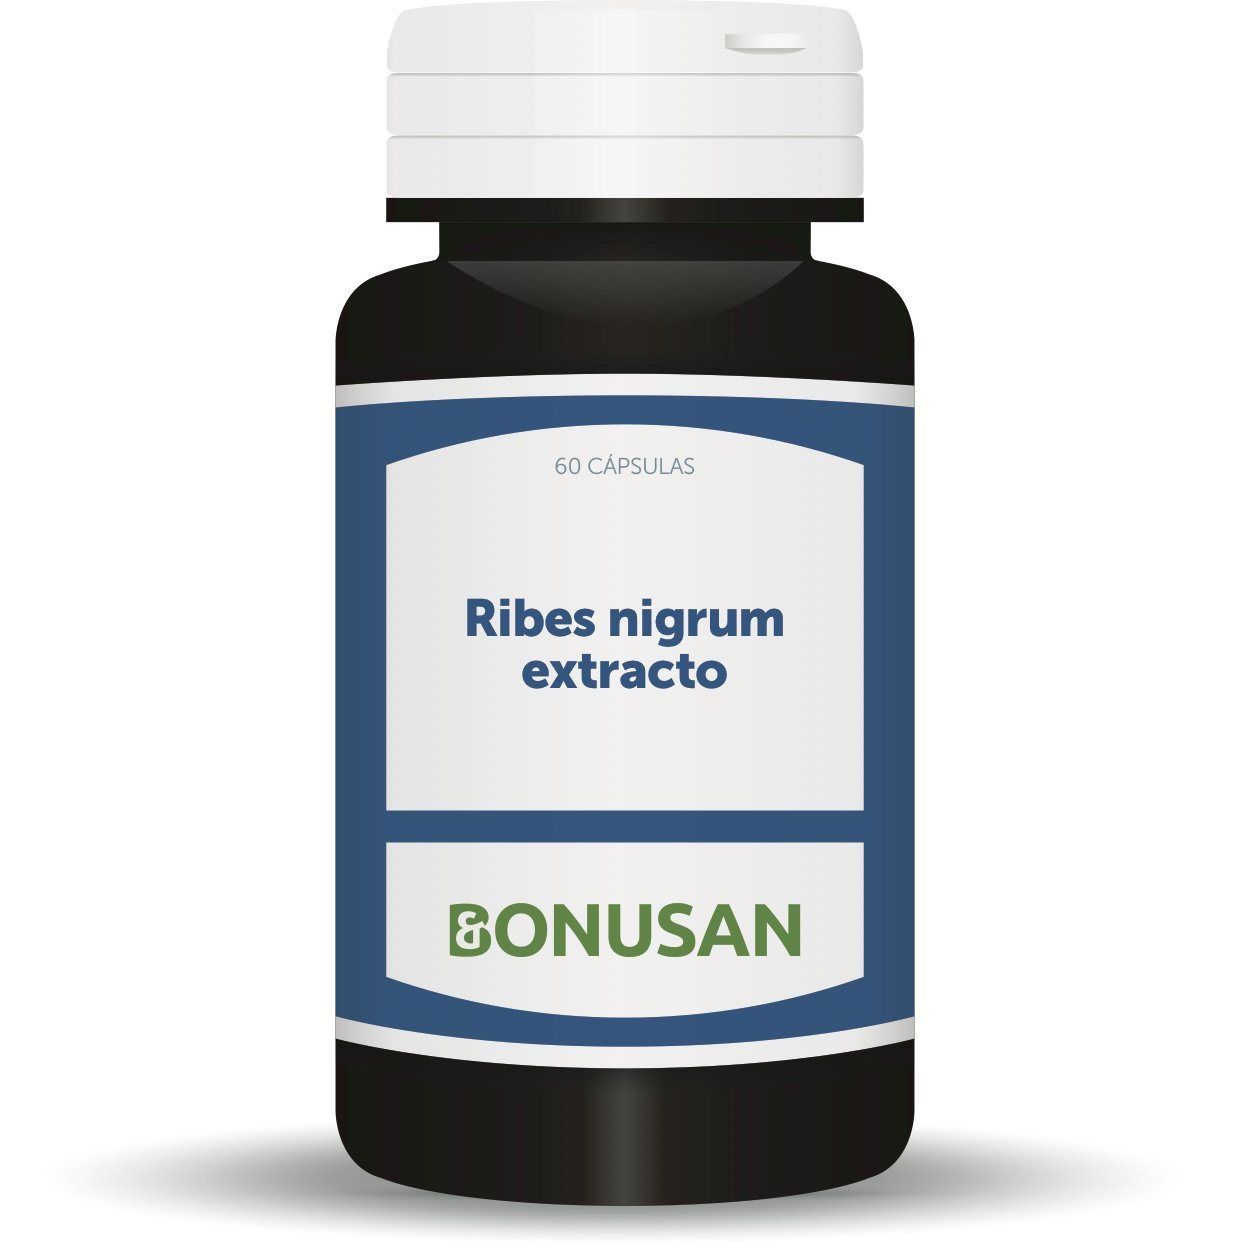 Ribes Nigrum Extracto 60 Capsulas | Bonusan - Dietetica Ferrer